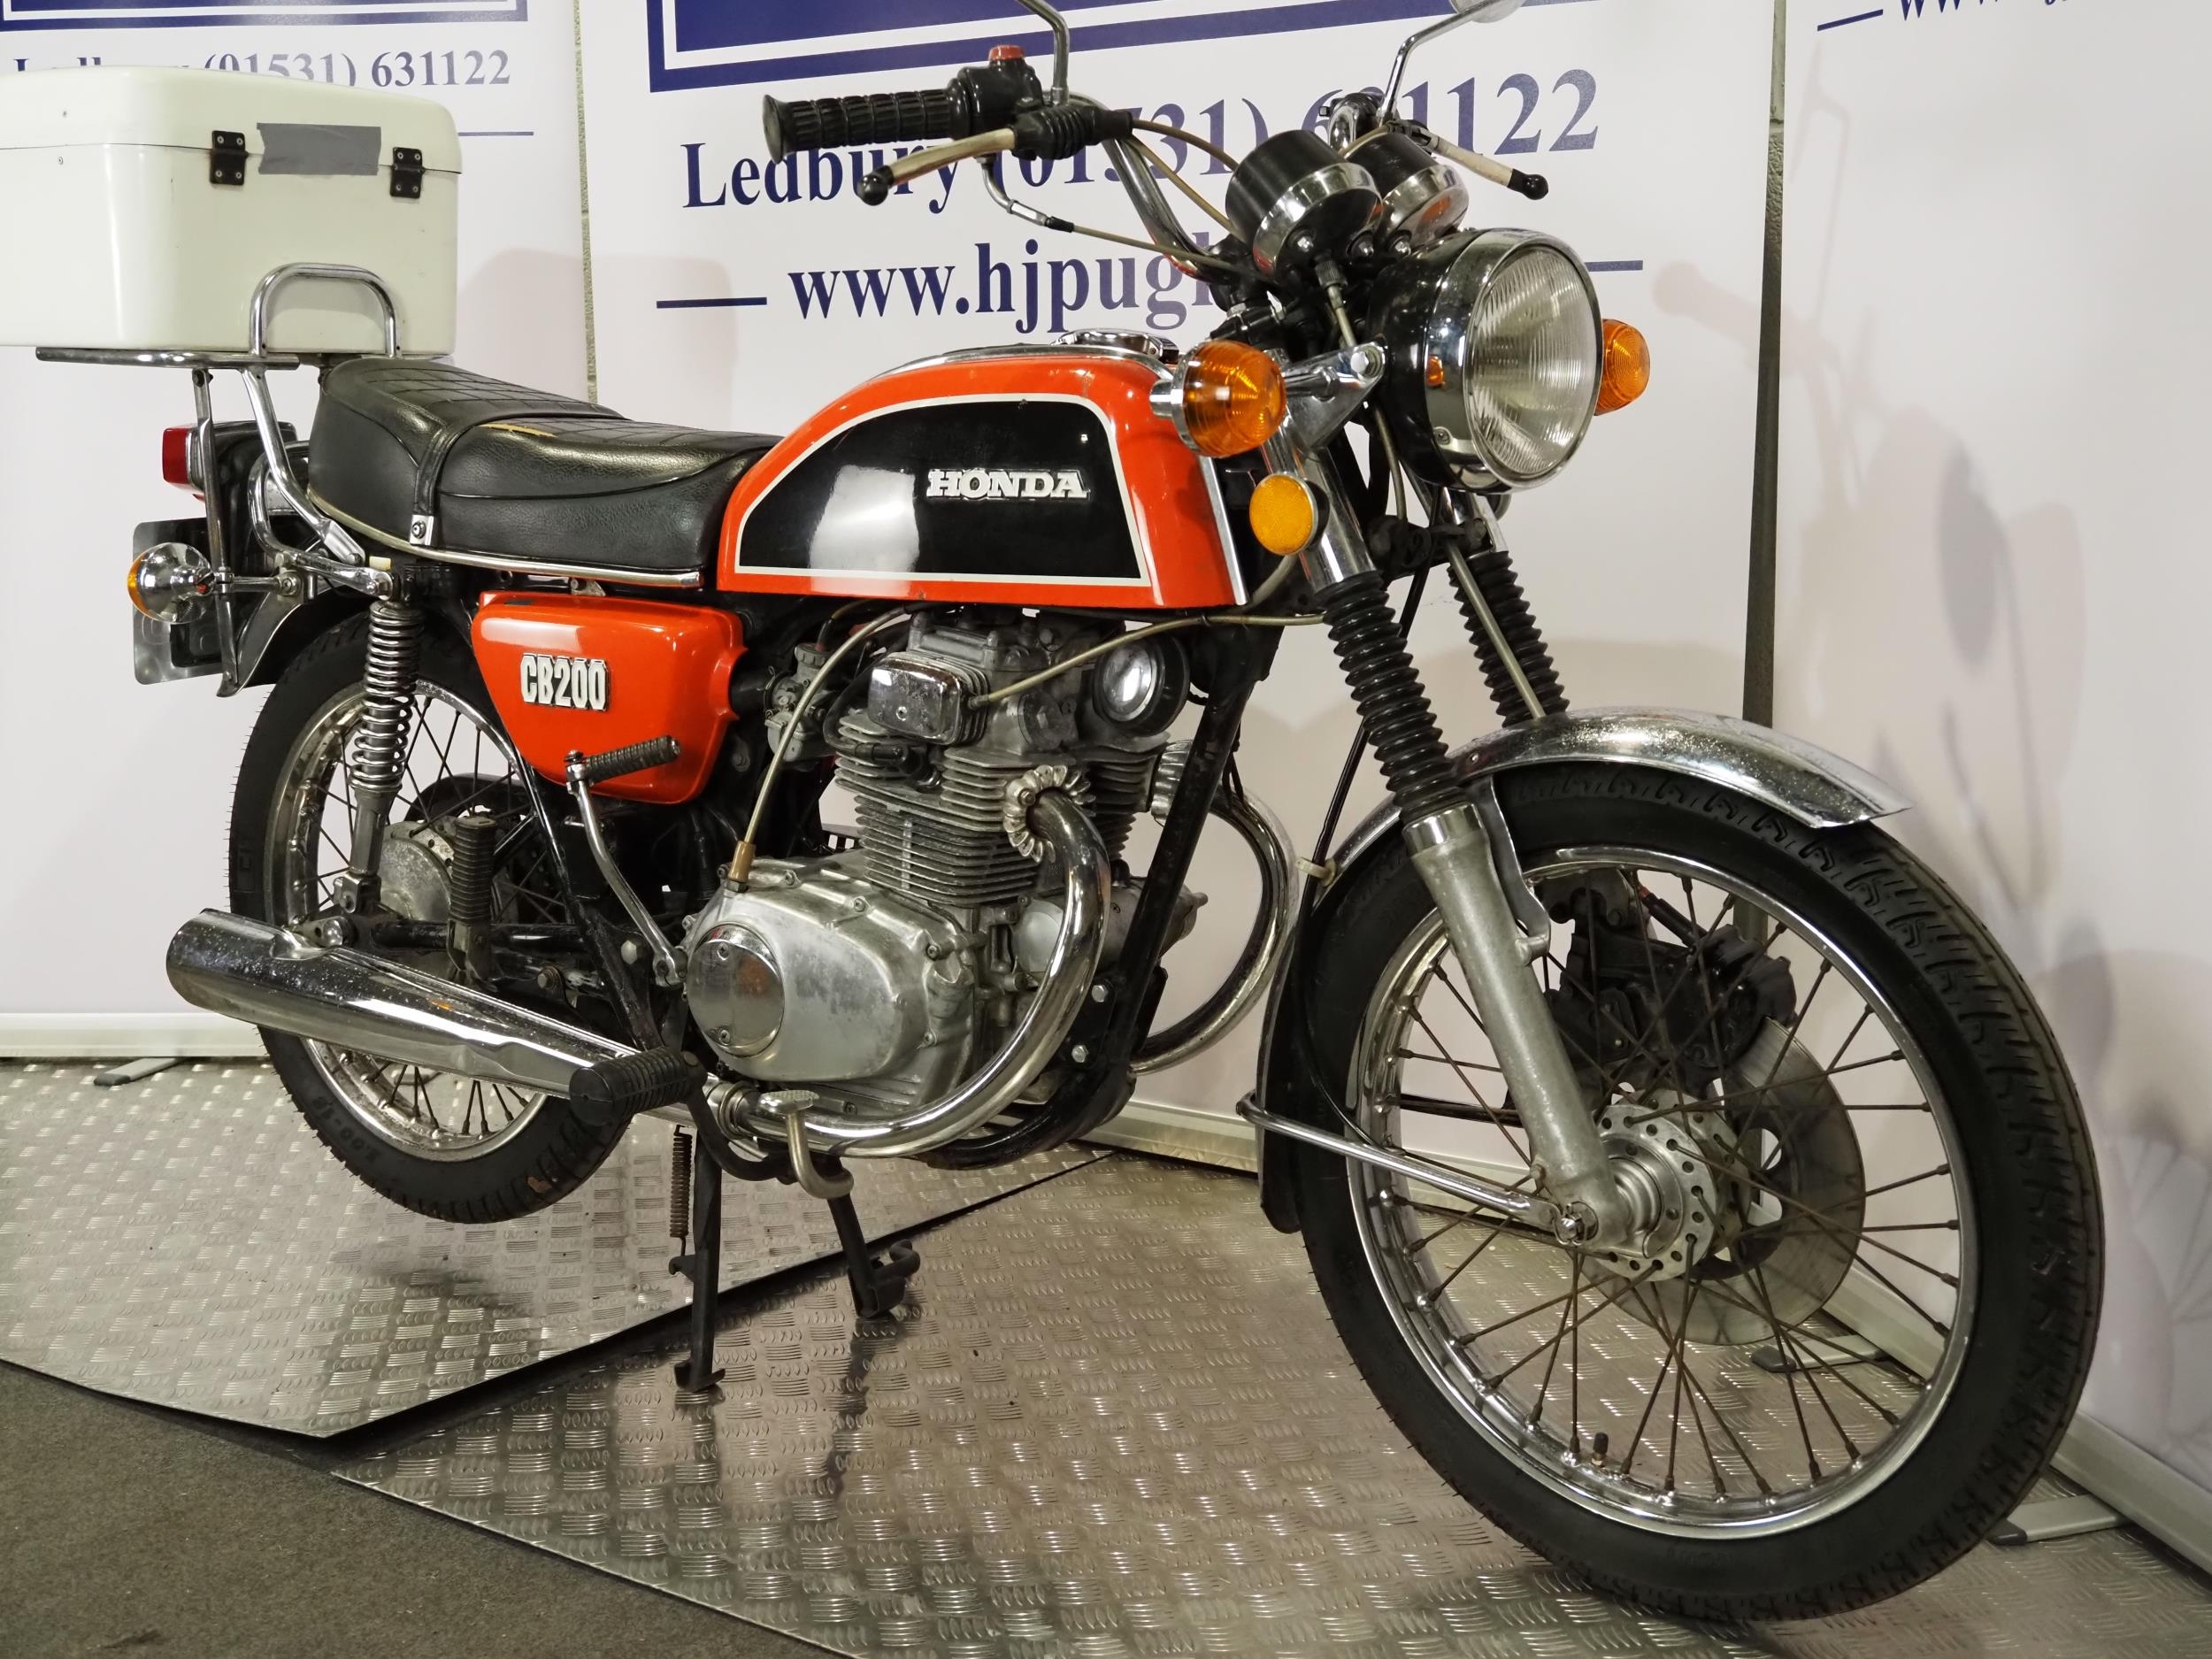 Honda CB200 motorcycle. 1976. 198cc Frame No. CB200-1044060 Frame No. CB200E-1046364 UK supplied - Image 2 of 6